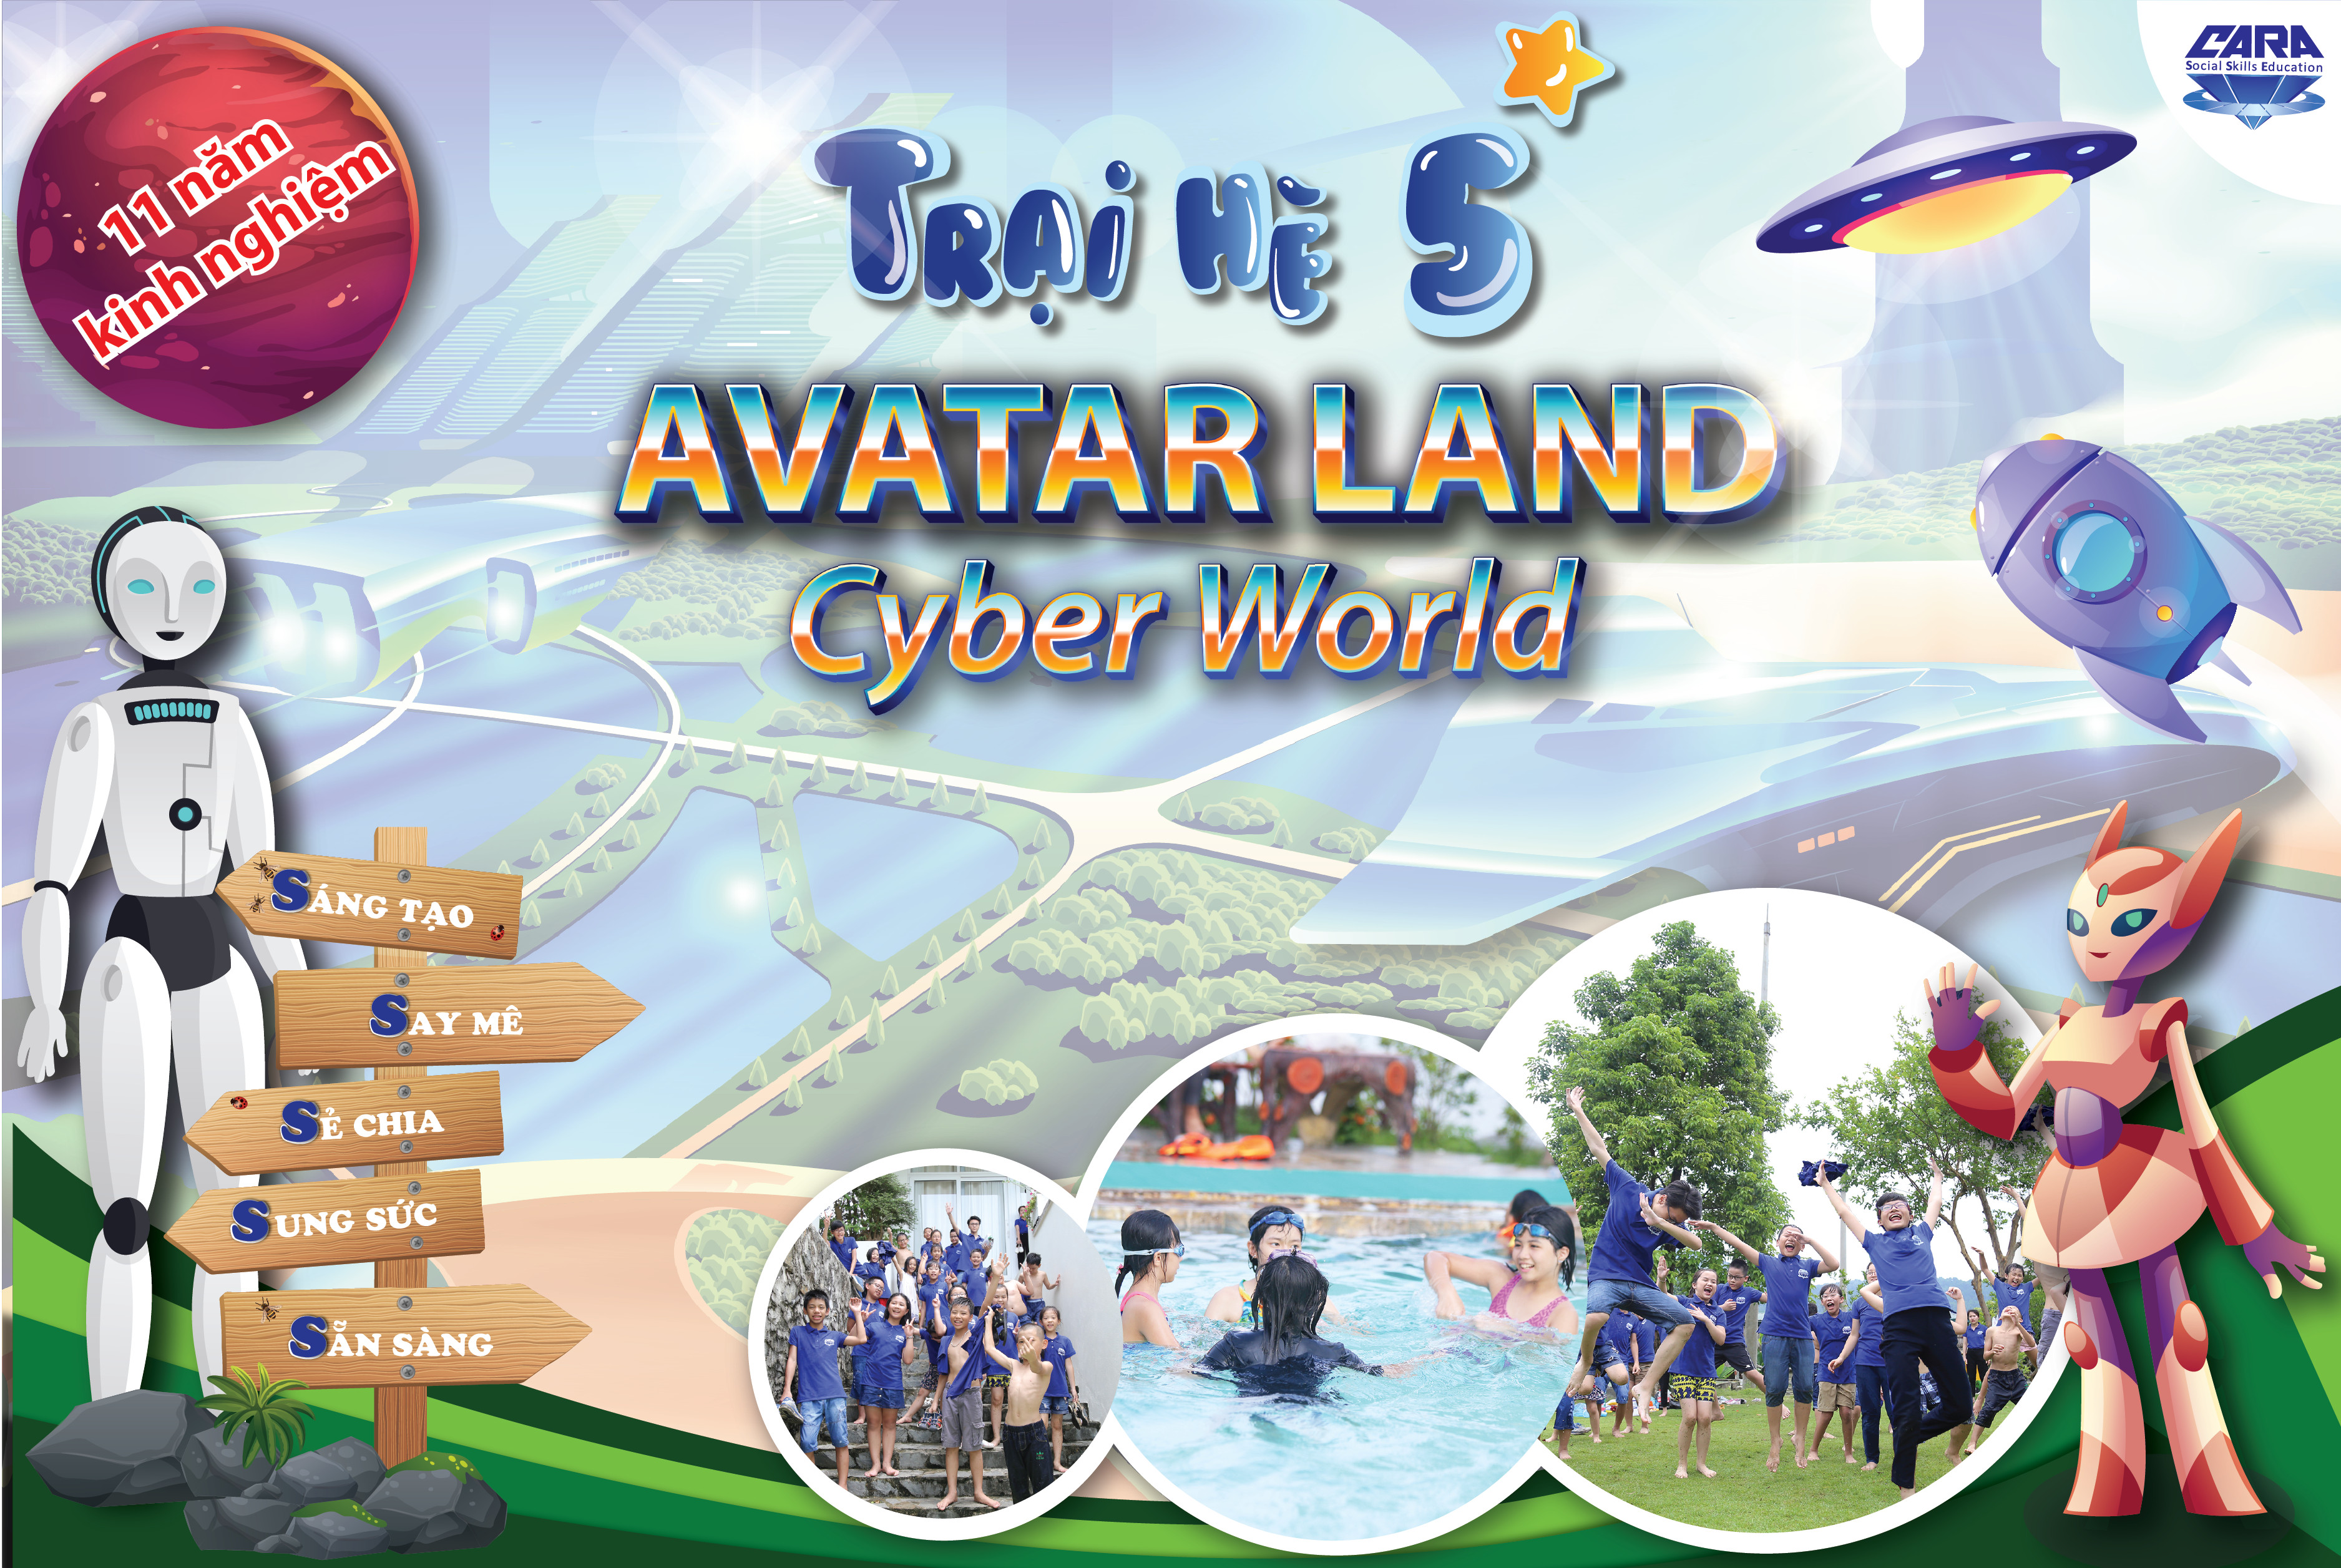 Trại hè bán trú 5 Avatar Land Cyber World  Thế giới công nghệ